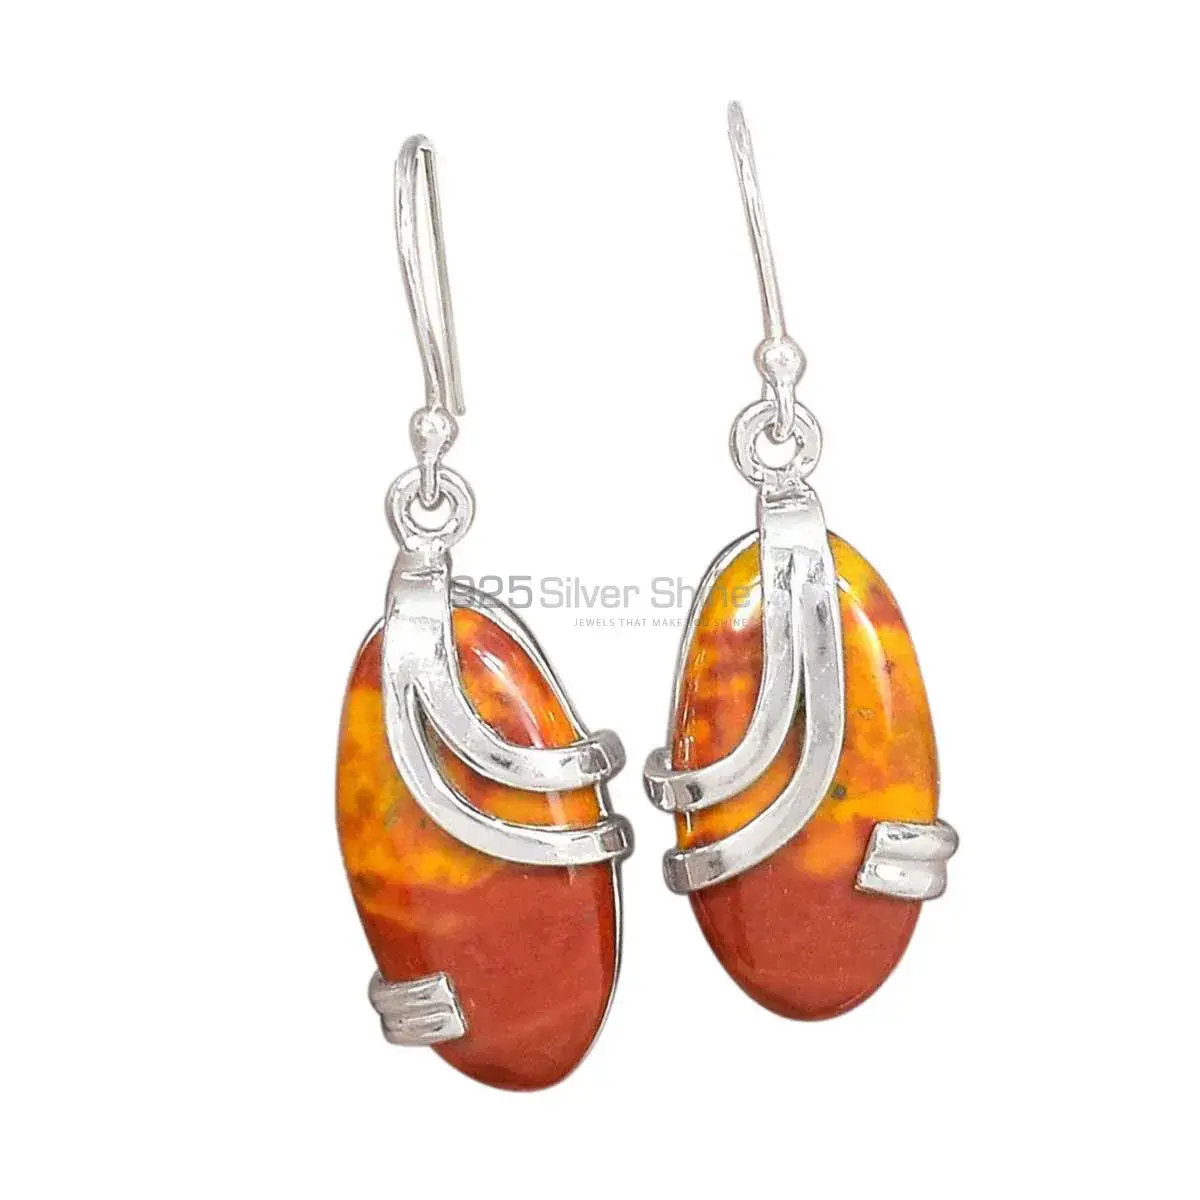 Beautiful 925 Sterling Silver Handmade Earrings Suppliers In Mookaite Gemstone Jewelry 925SE2087